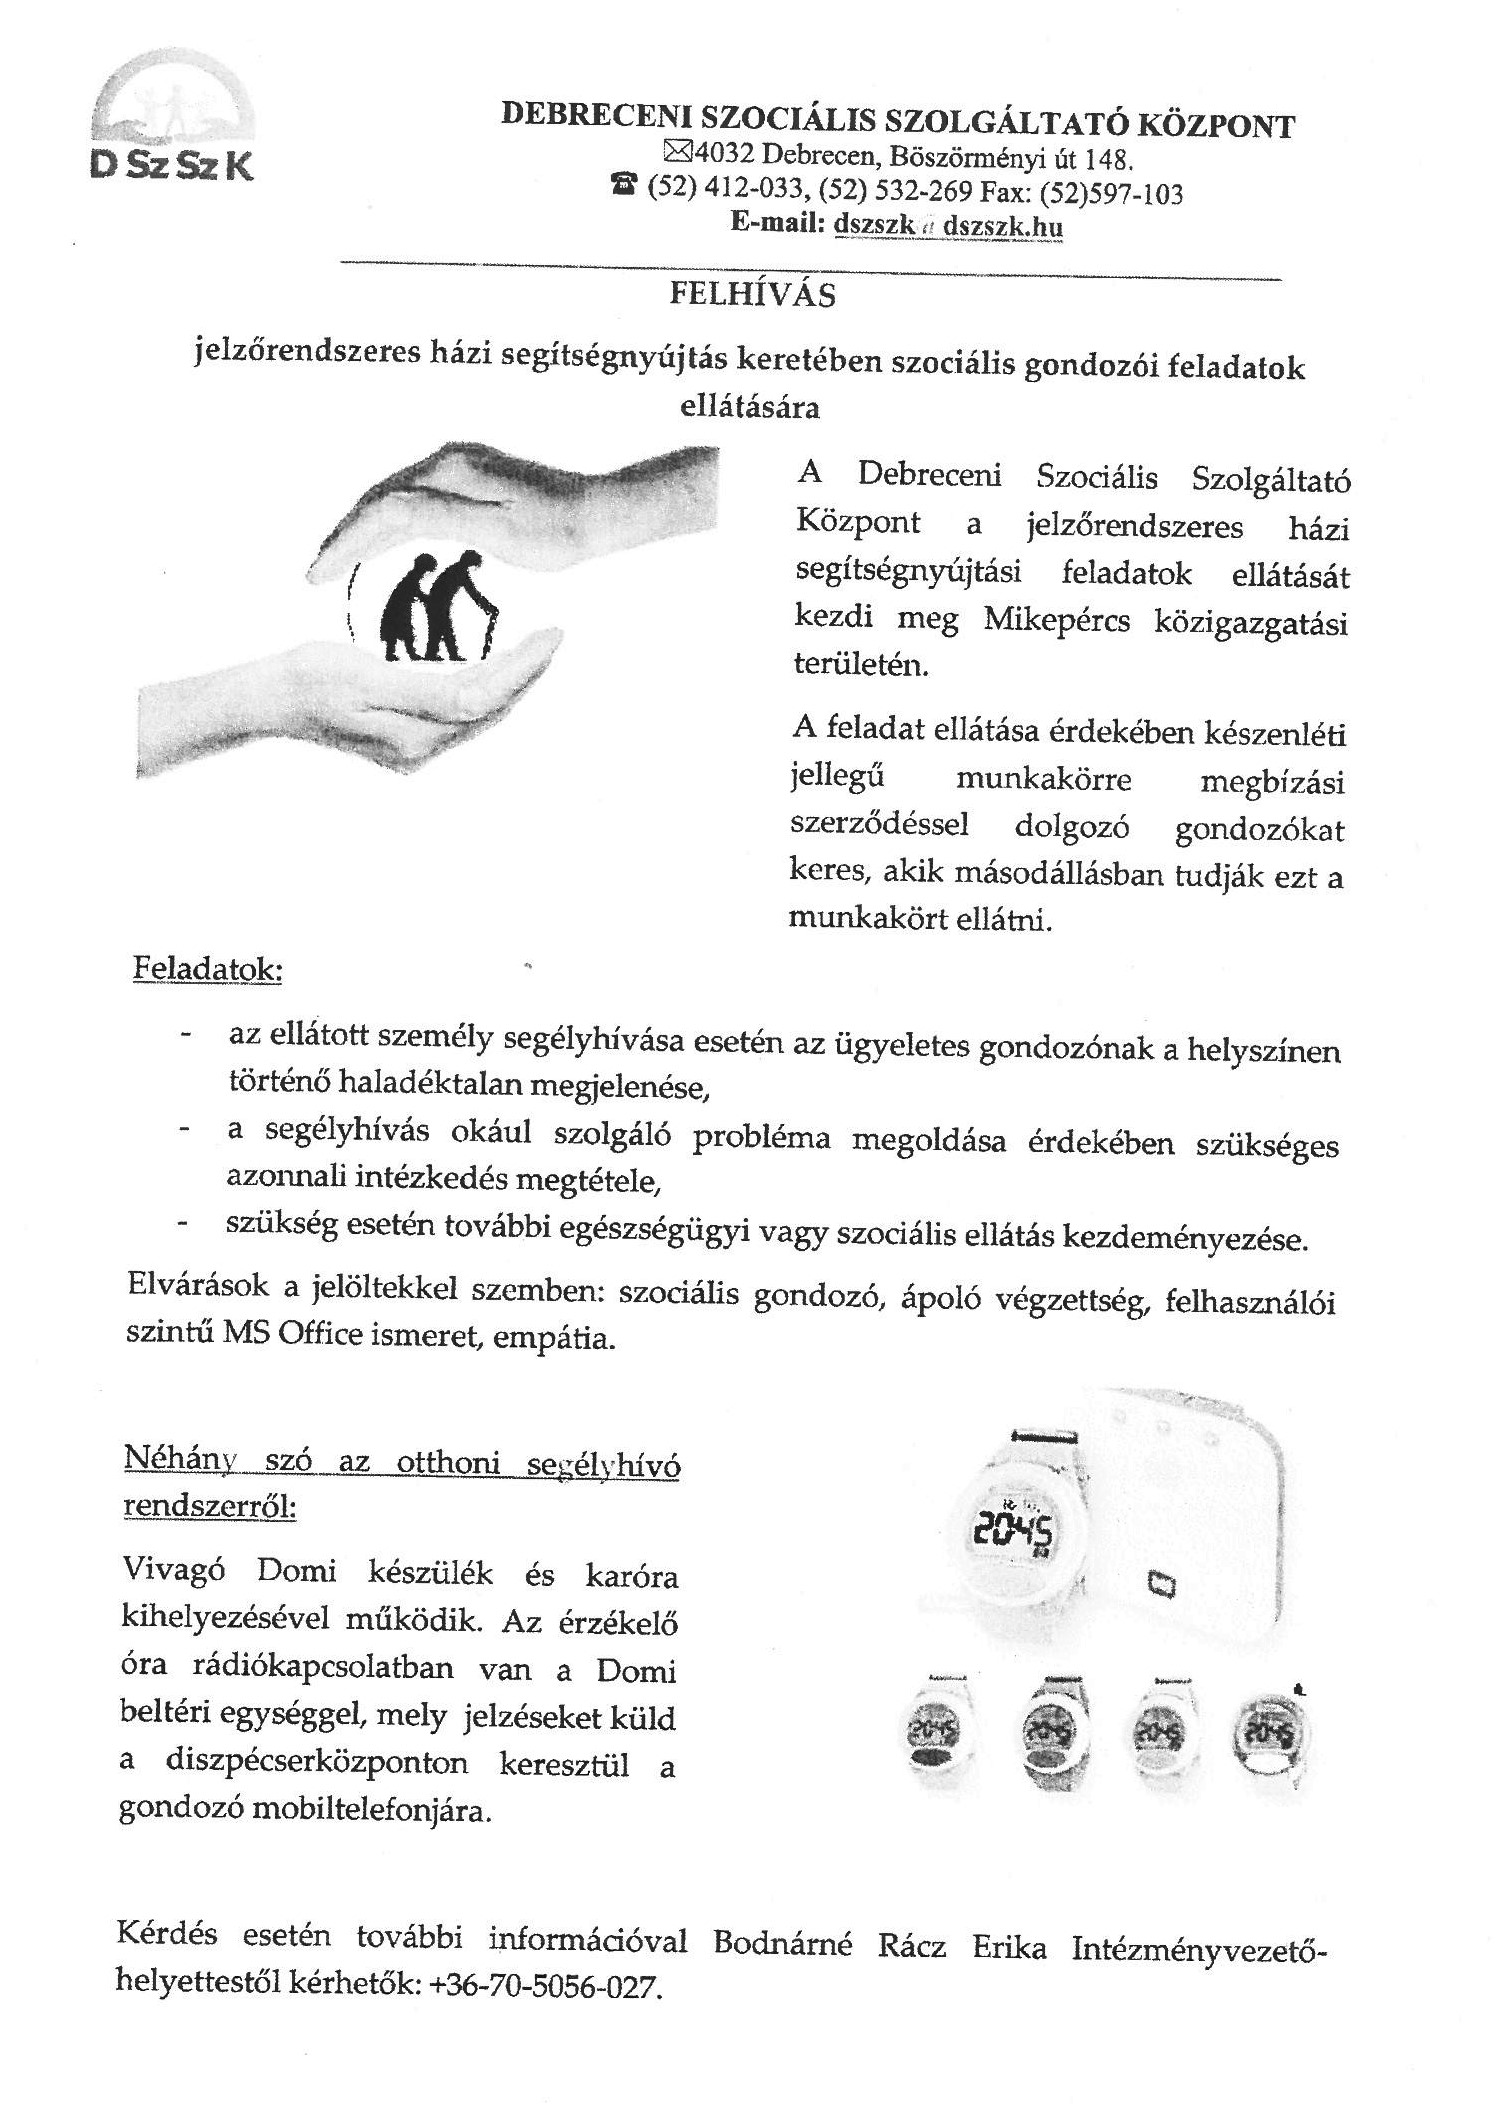 Felhívás- Debreceni Szociális Szolgáltató Központ álláshirdetése